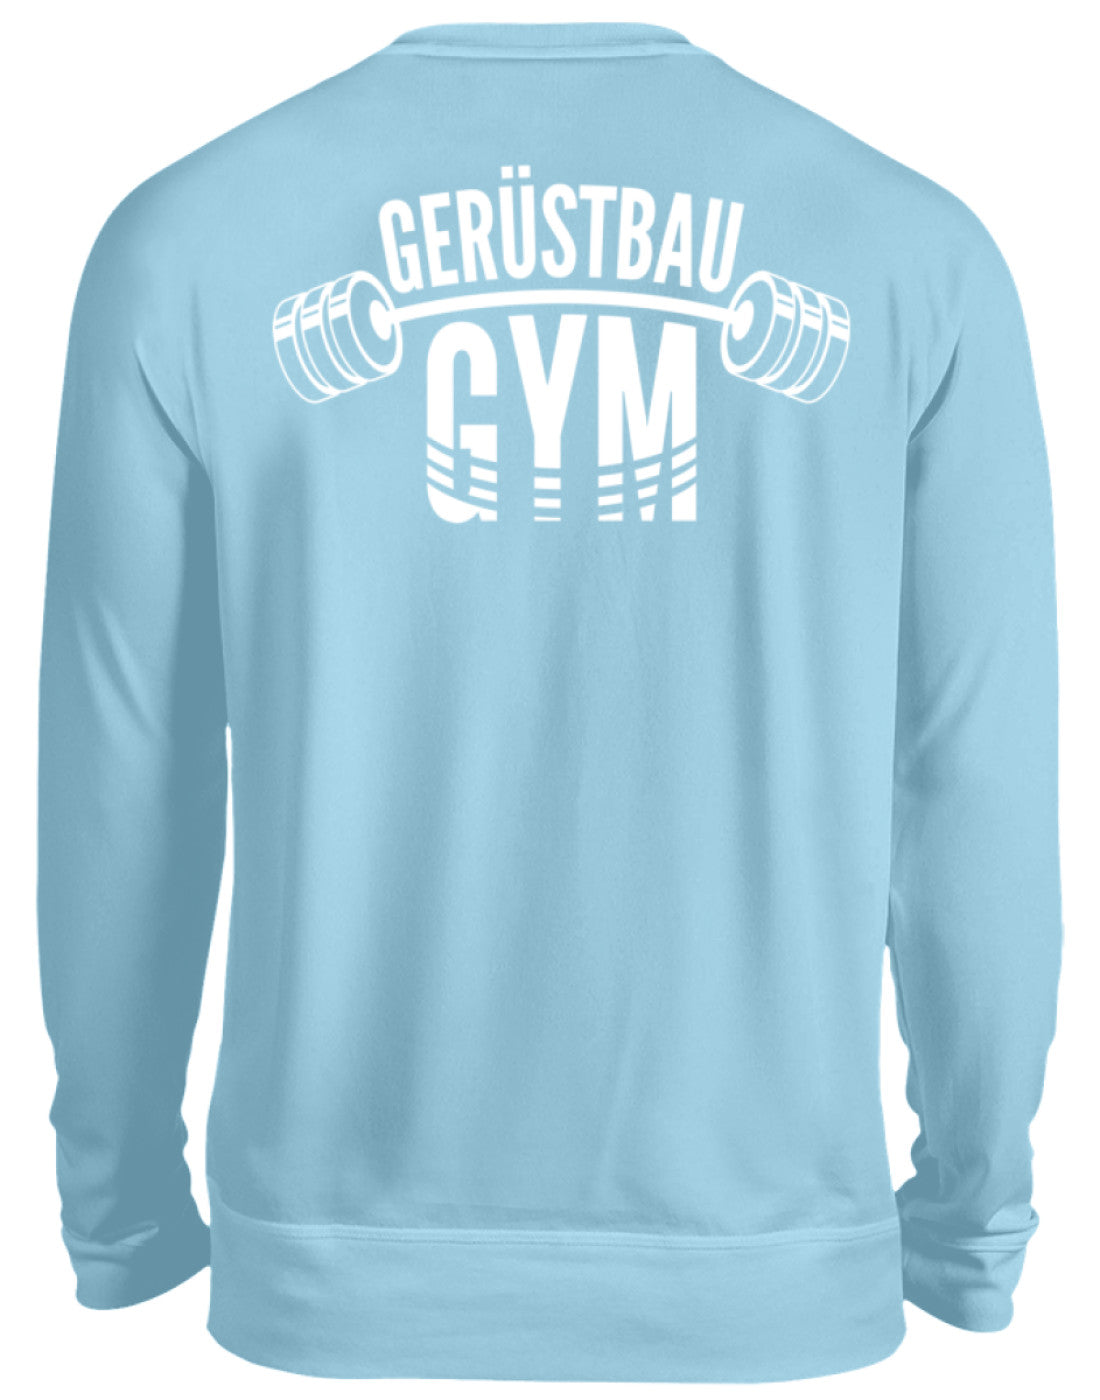 Gerüstbau / GYM   - Unisex Pullover €34.95 Gerüstbauer - Shop >>